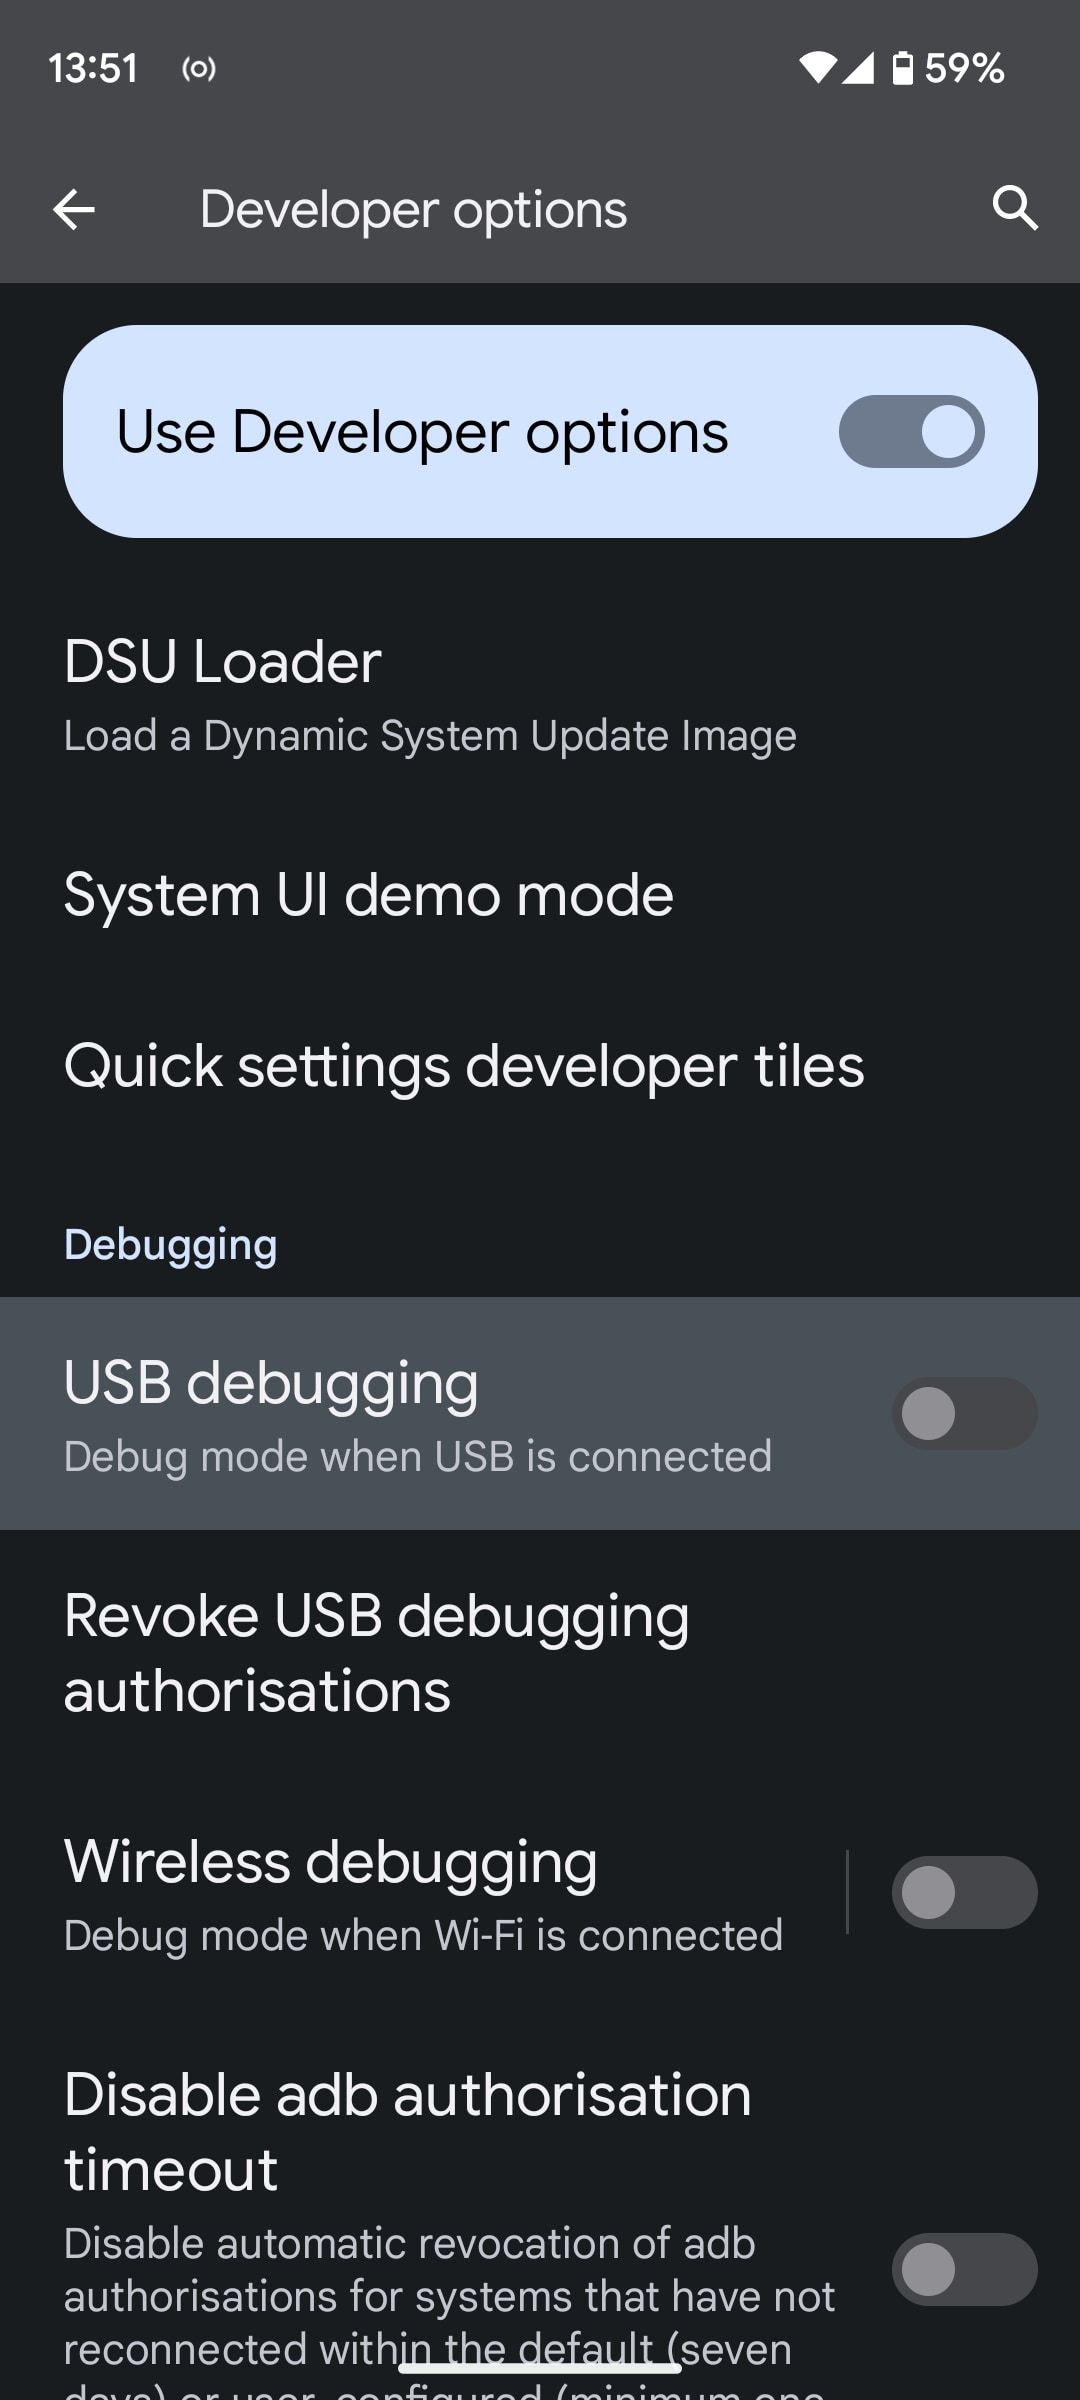 enable usb debugging